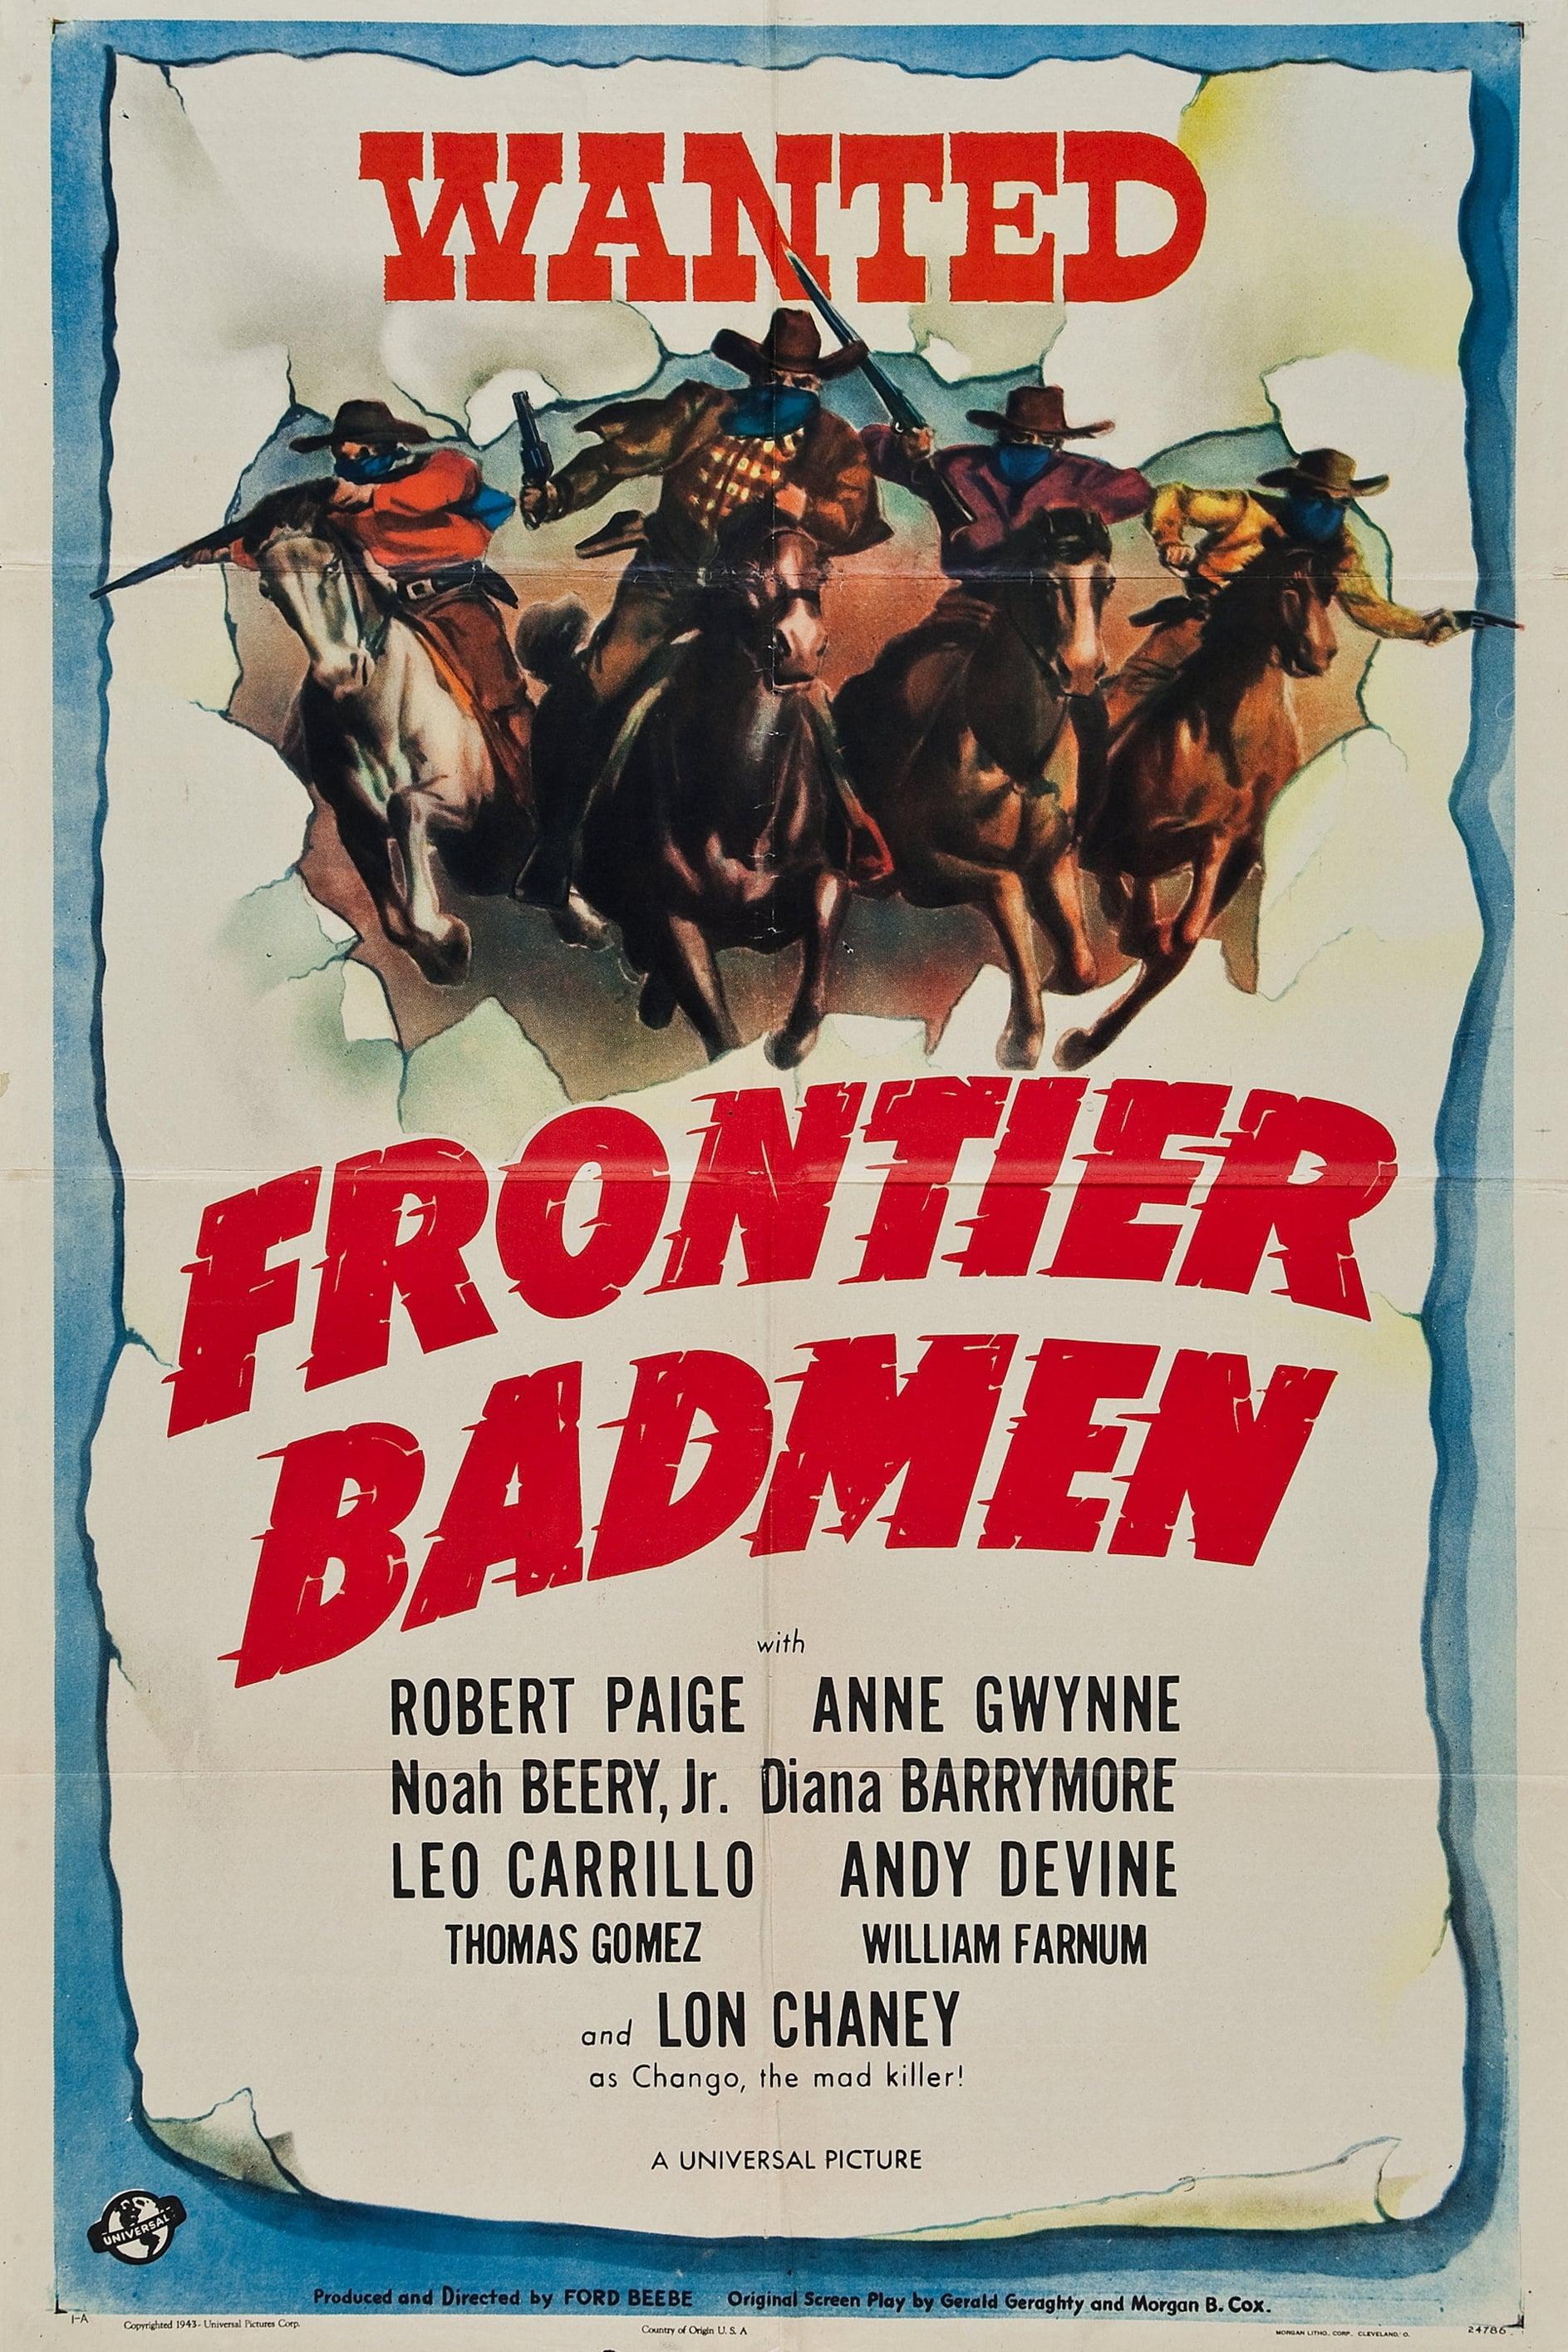 Frontier Badmen poster